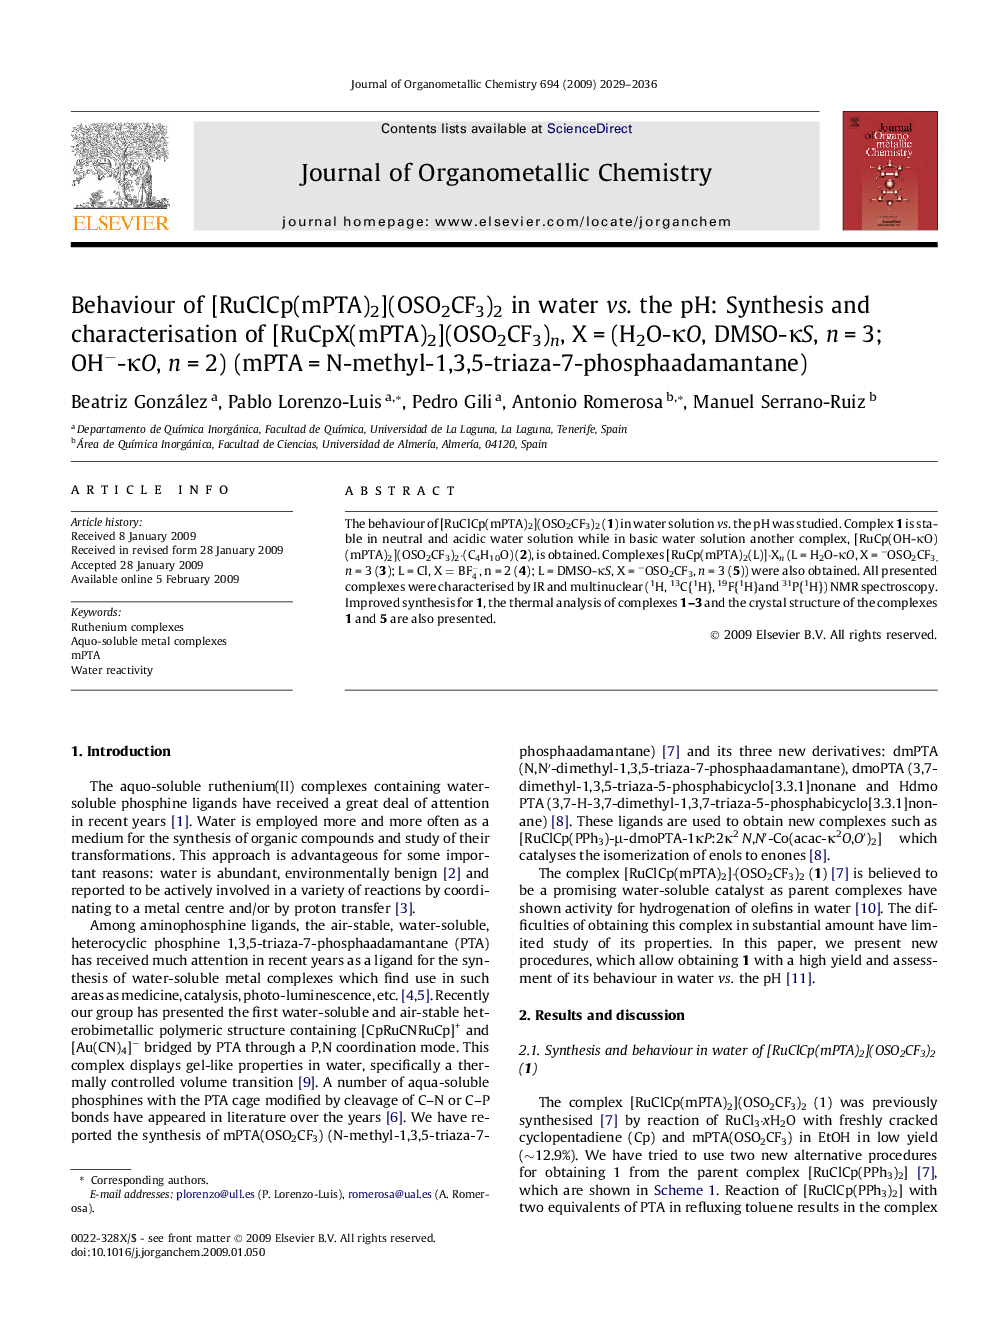 Behaviour of [RuClCp(mPTA)2](OSO2CF3)2 in water vs. the pH: Synthesis and characterisation of [RuCpX(mPTA)2](OSO2CF3)n, XÂ =Â (H2O-ÎºO, DMSO-ÎºS, nÂ =Â 3; OHâ-ÎºO, nÂ =Â 2) (mPTAÂ =Â N-methyl-1,3,5-triaza-7-phosphaadamantane)